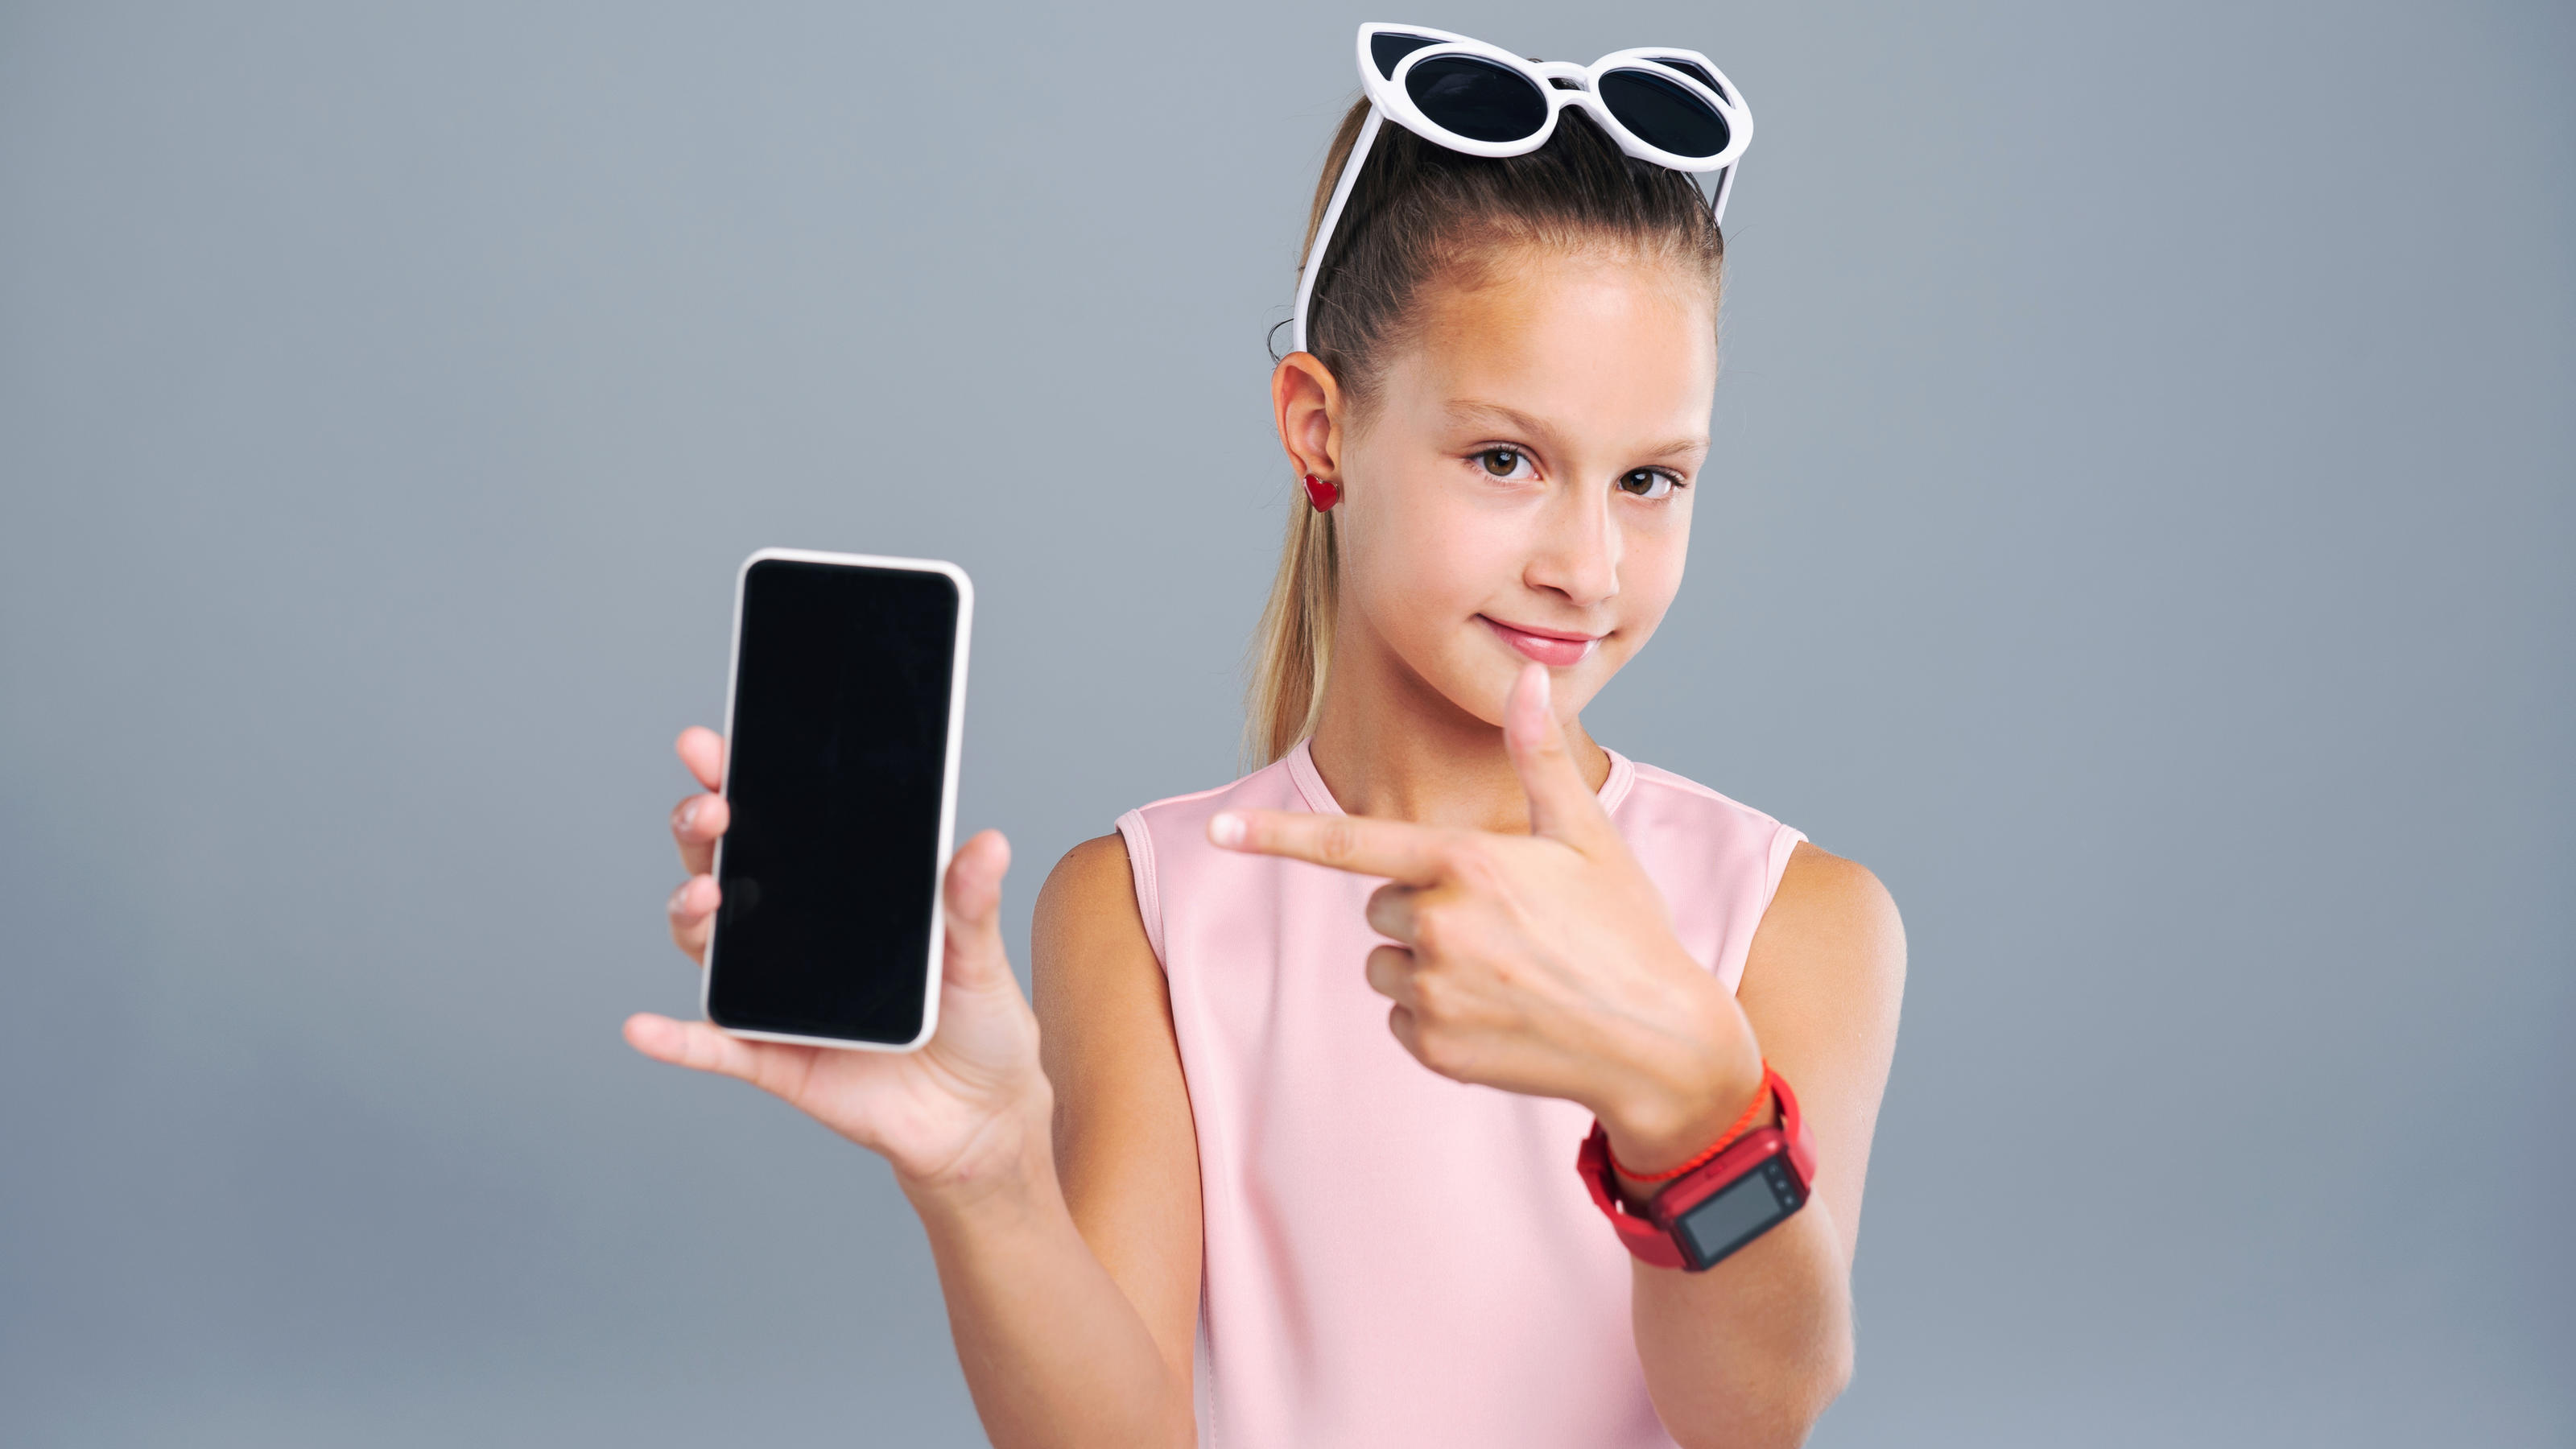 Je nach Alter des Kindes kommt statt einer Smartwatch auch ein Smartphone in Frage